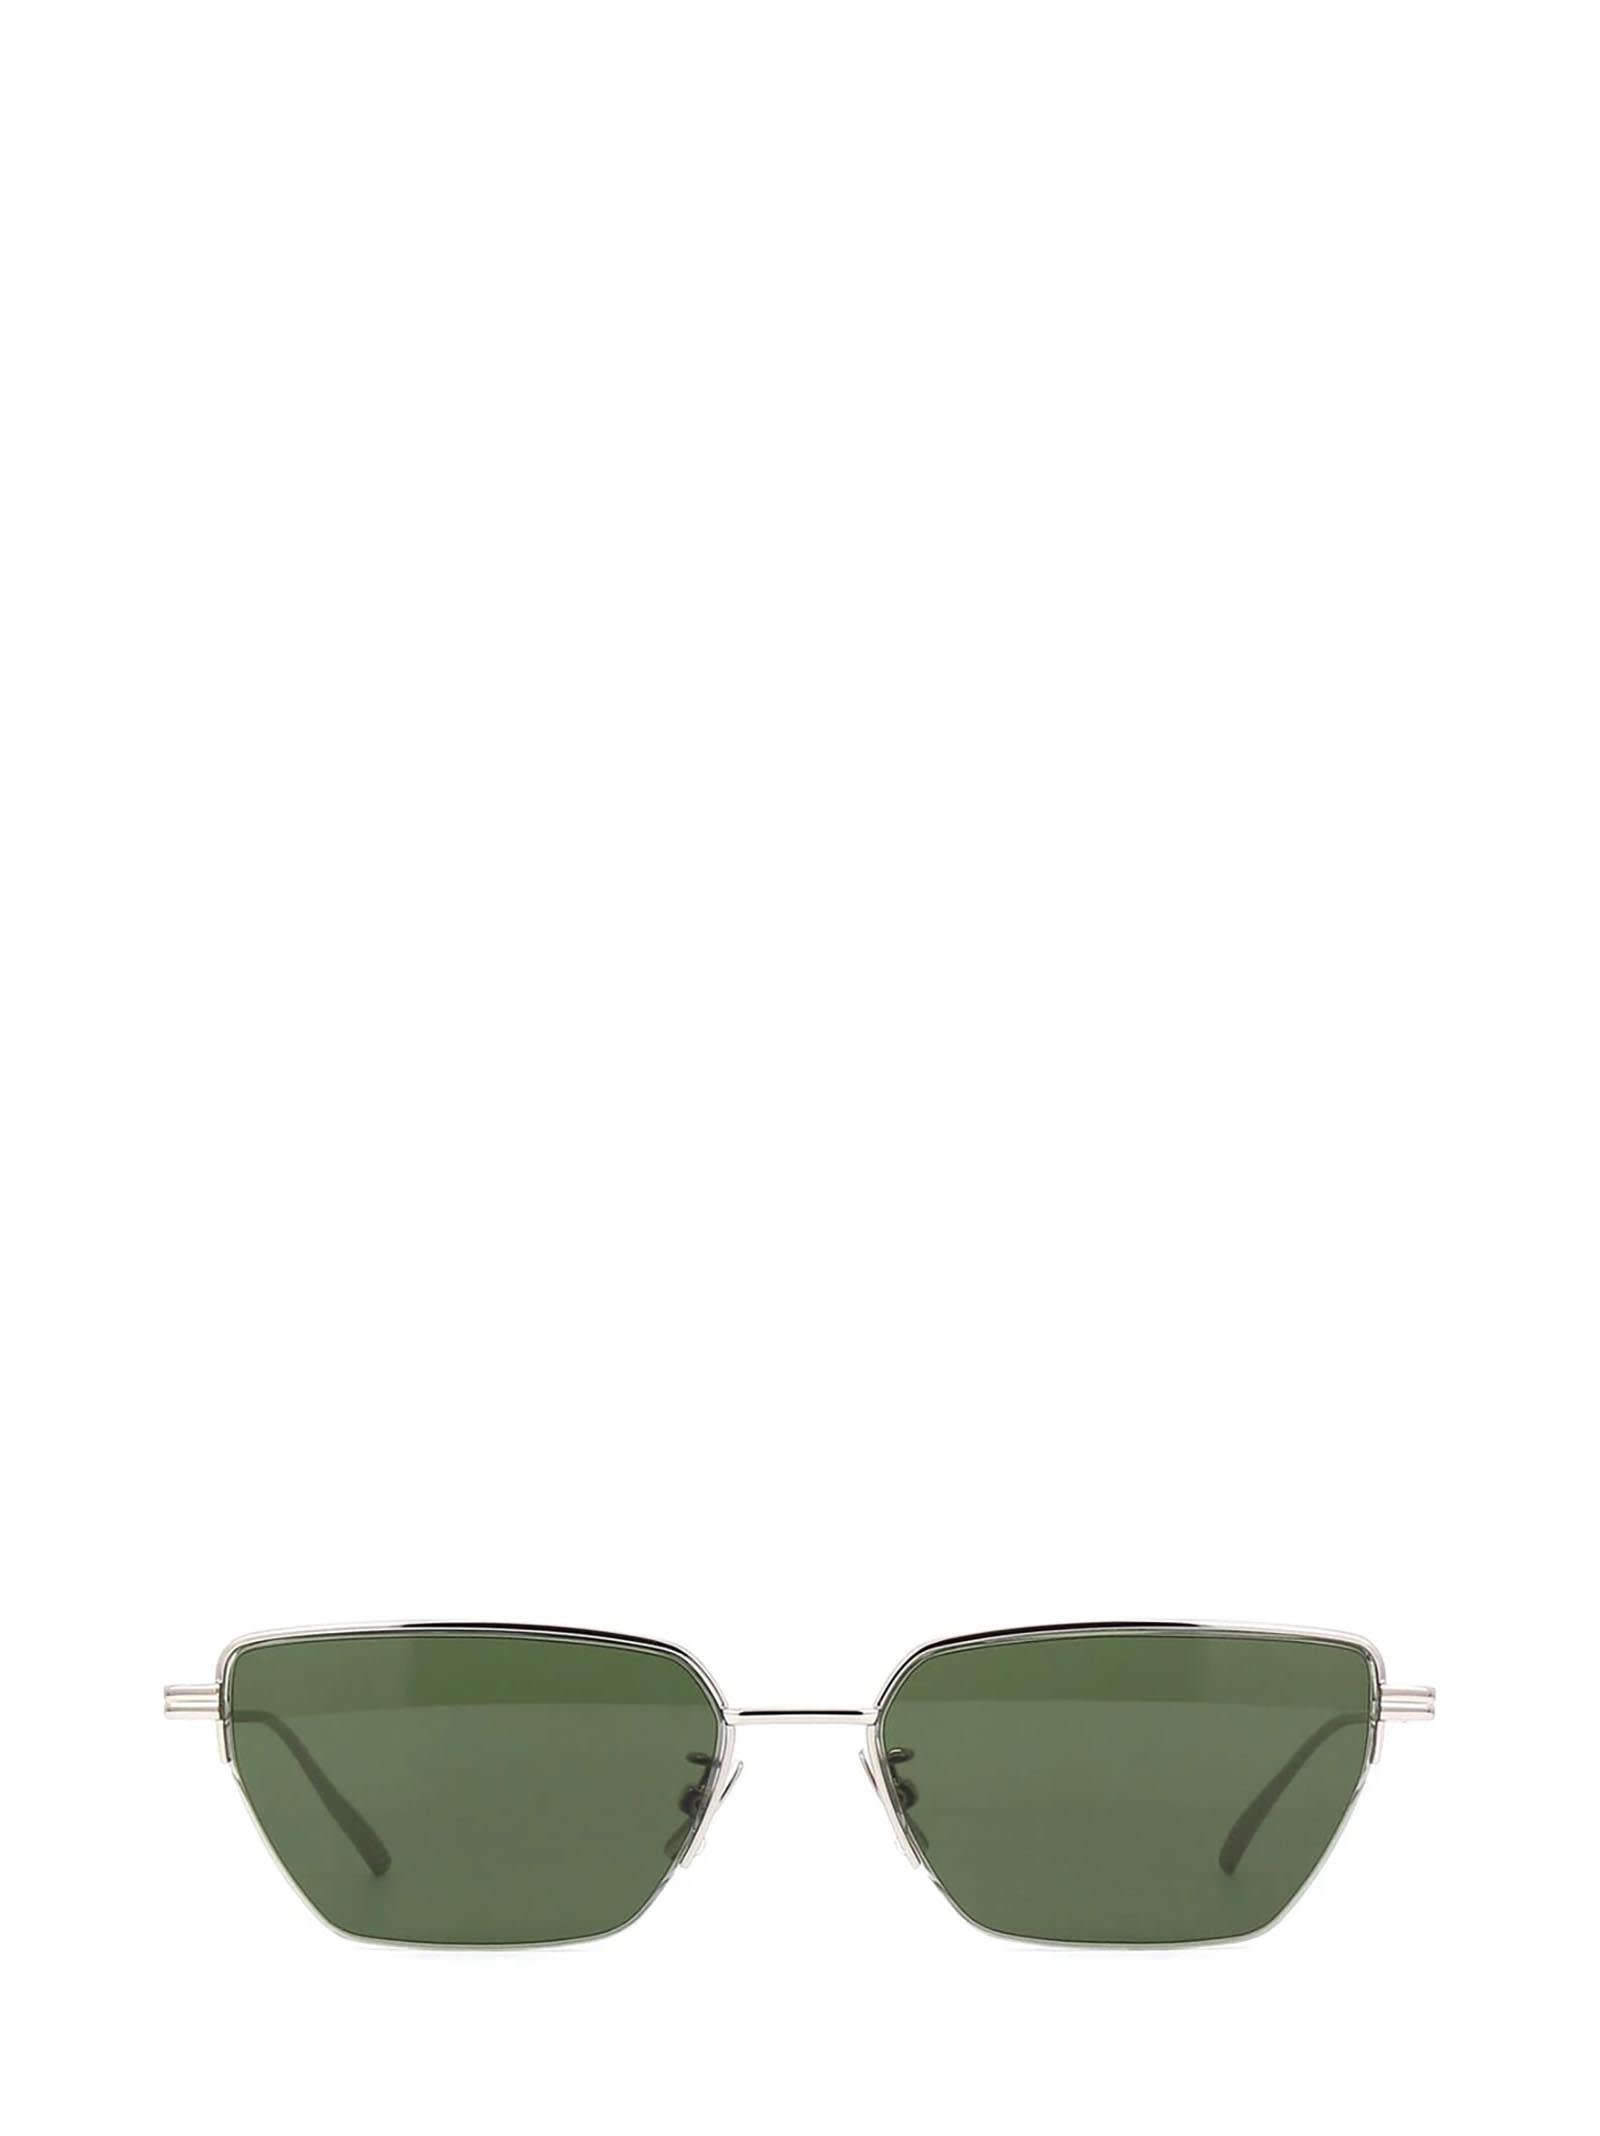 Bottega Veneta Bottega Veneta Bv1107s Silver Sunglasses